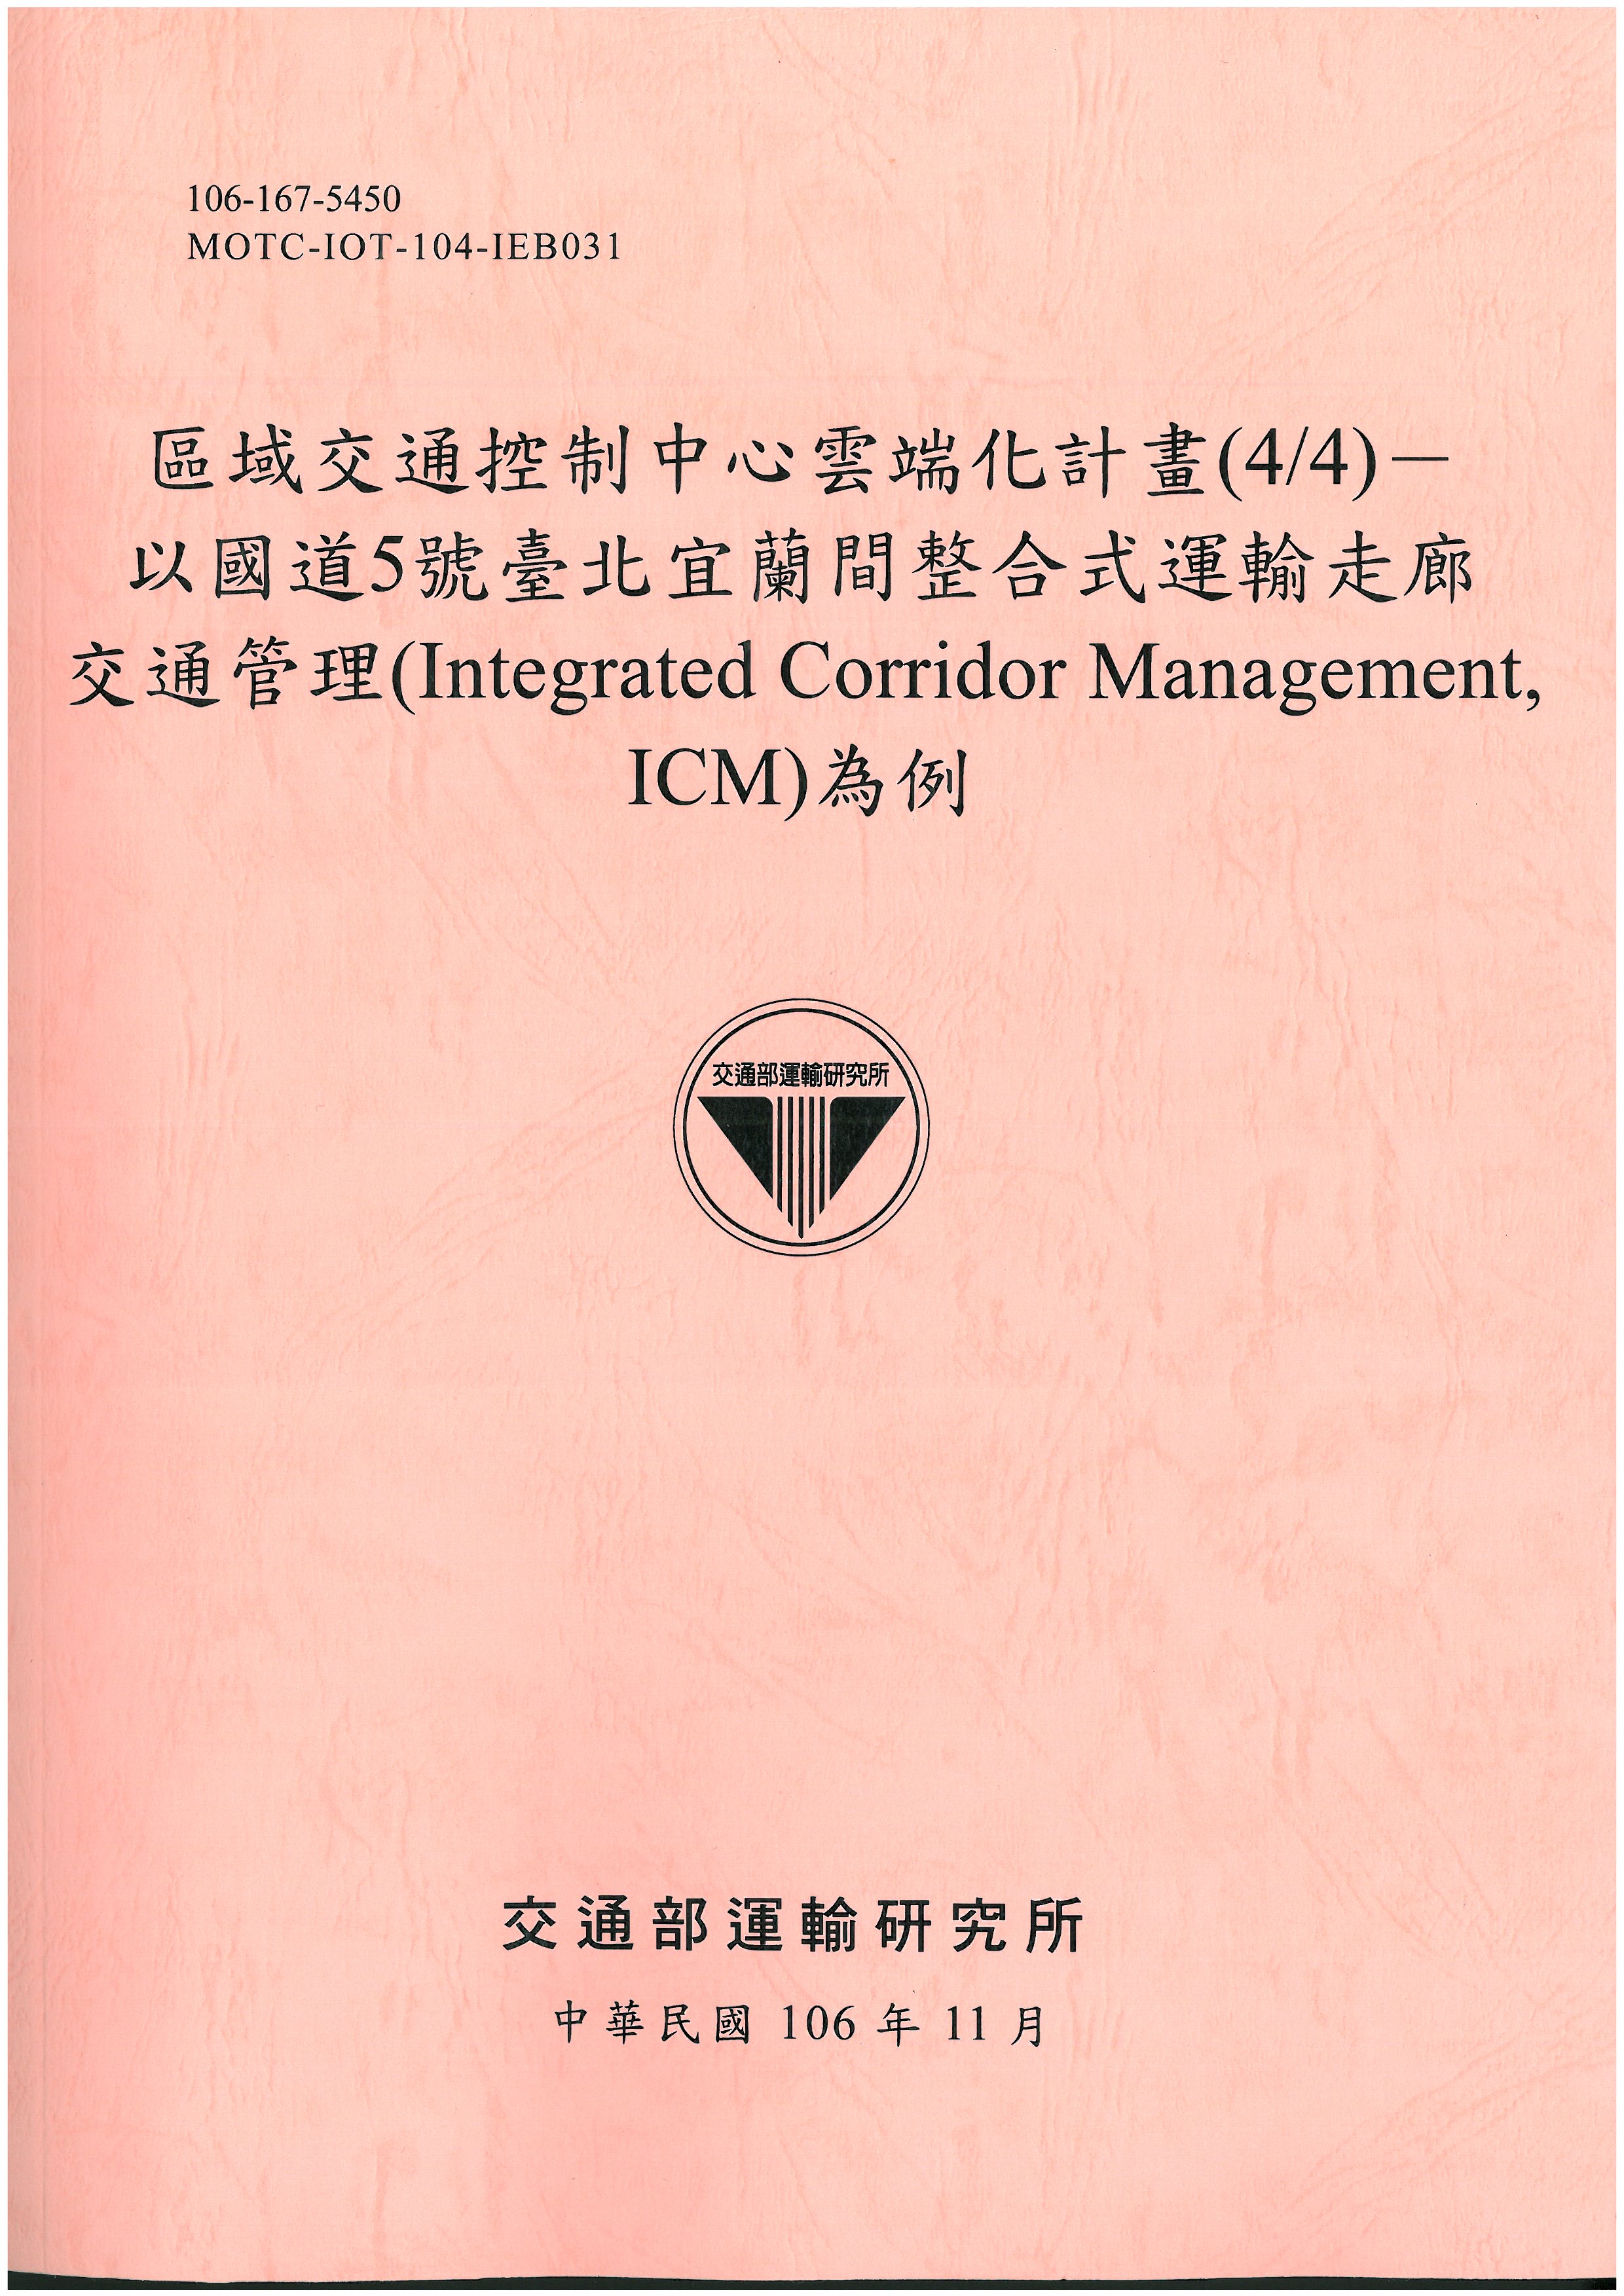 區域交通控制中心雲端化計畫(4/4)－以國道5號臺北宜蘭間整合式運輸走廊交通管理(Integrated Corridor Management, ICM)為例